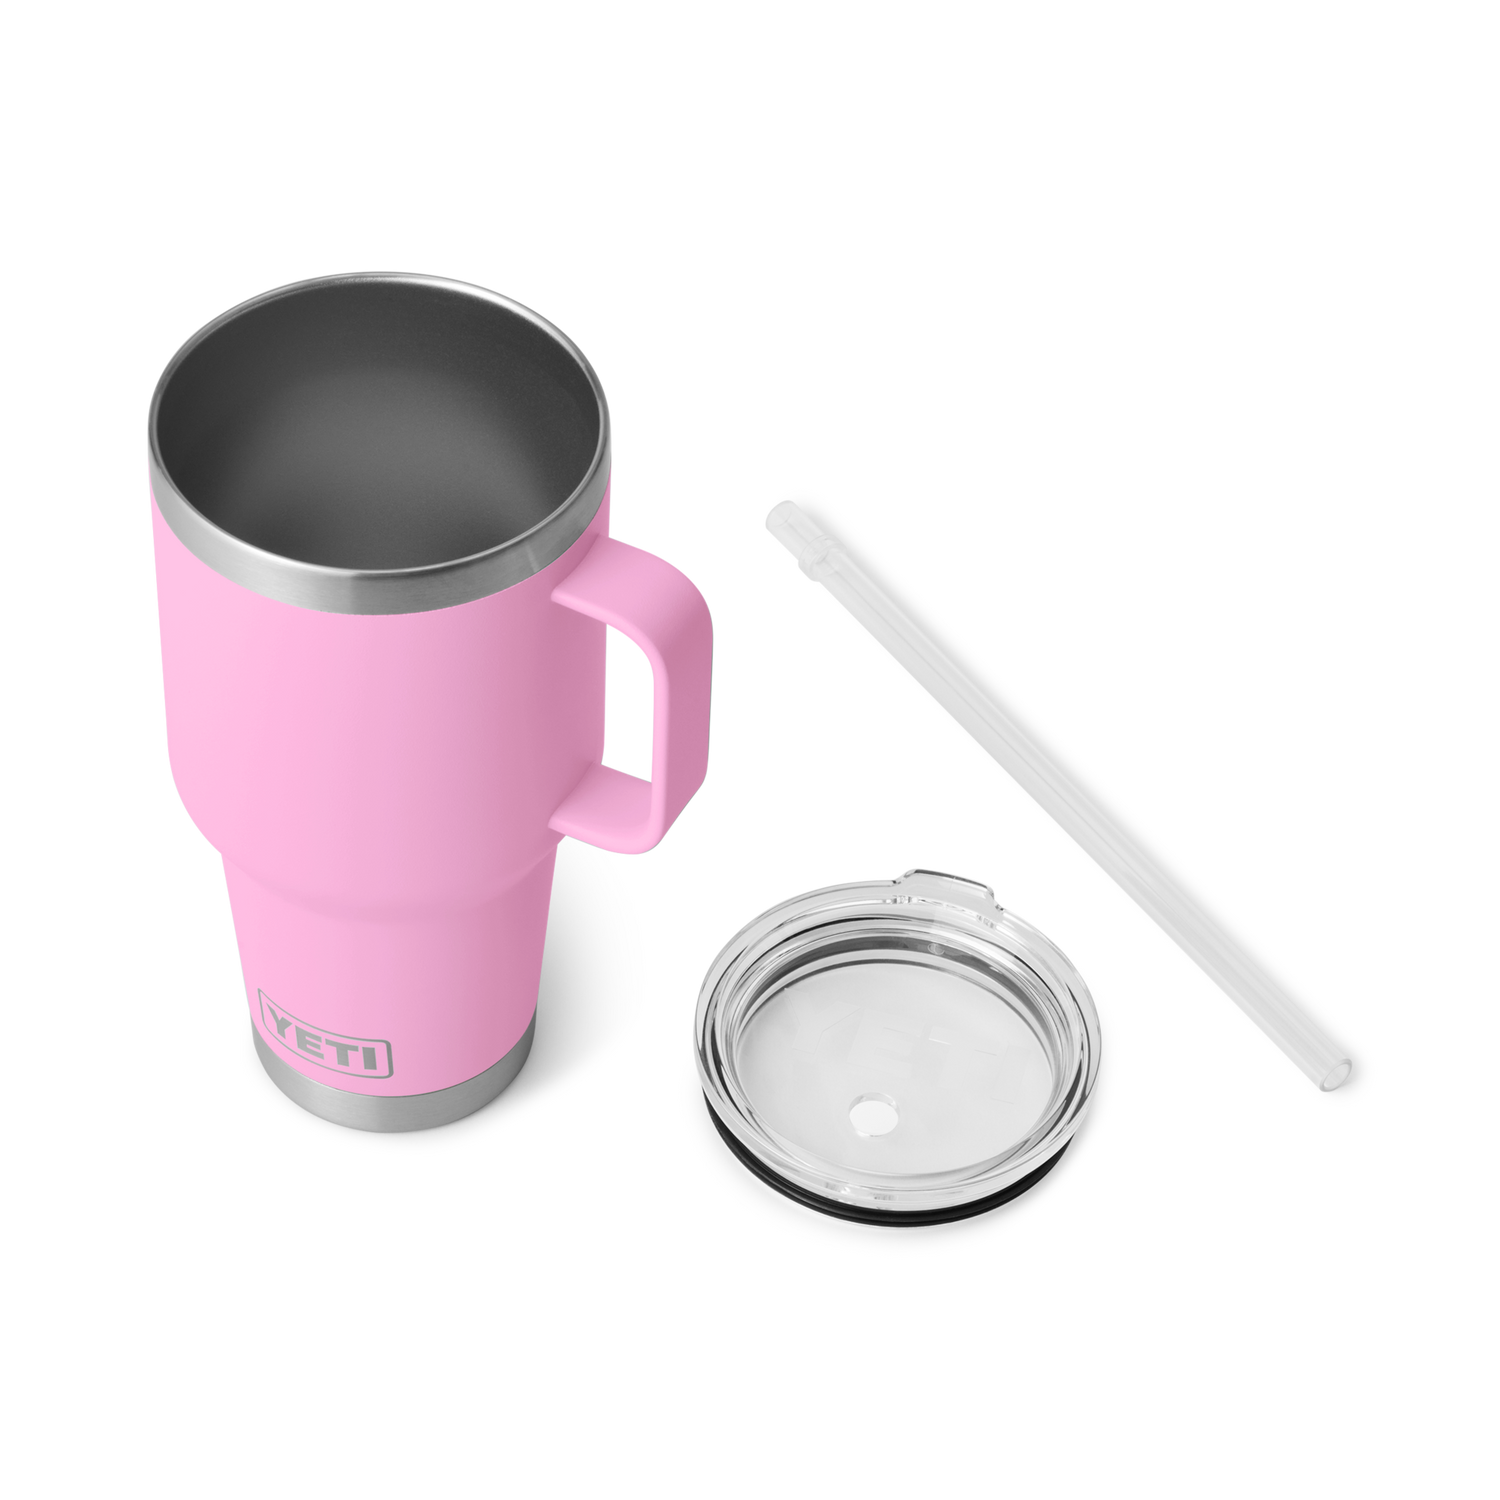 YETI Rambler® Mug De 35 oz (994 ml) Avec couvercle à paille Power Pink